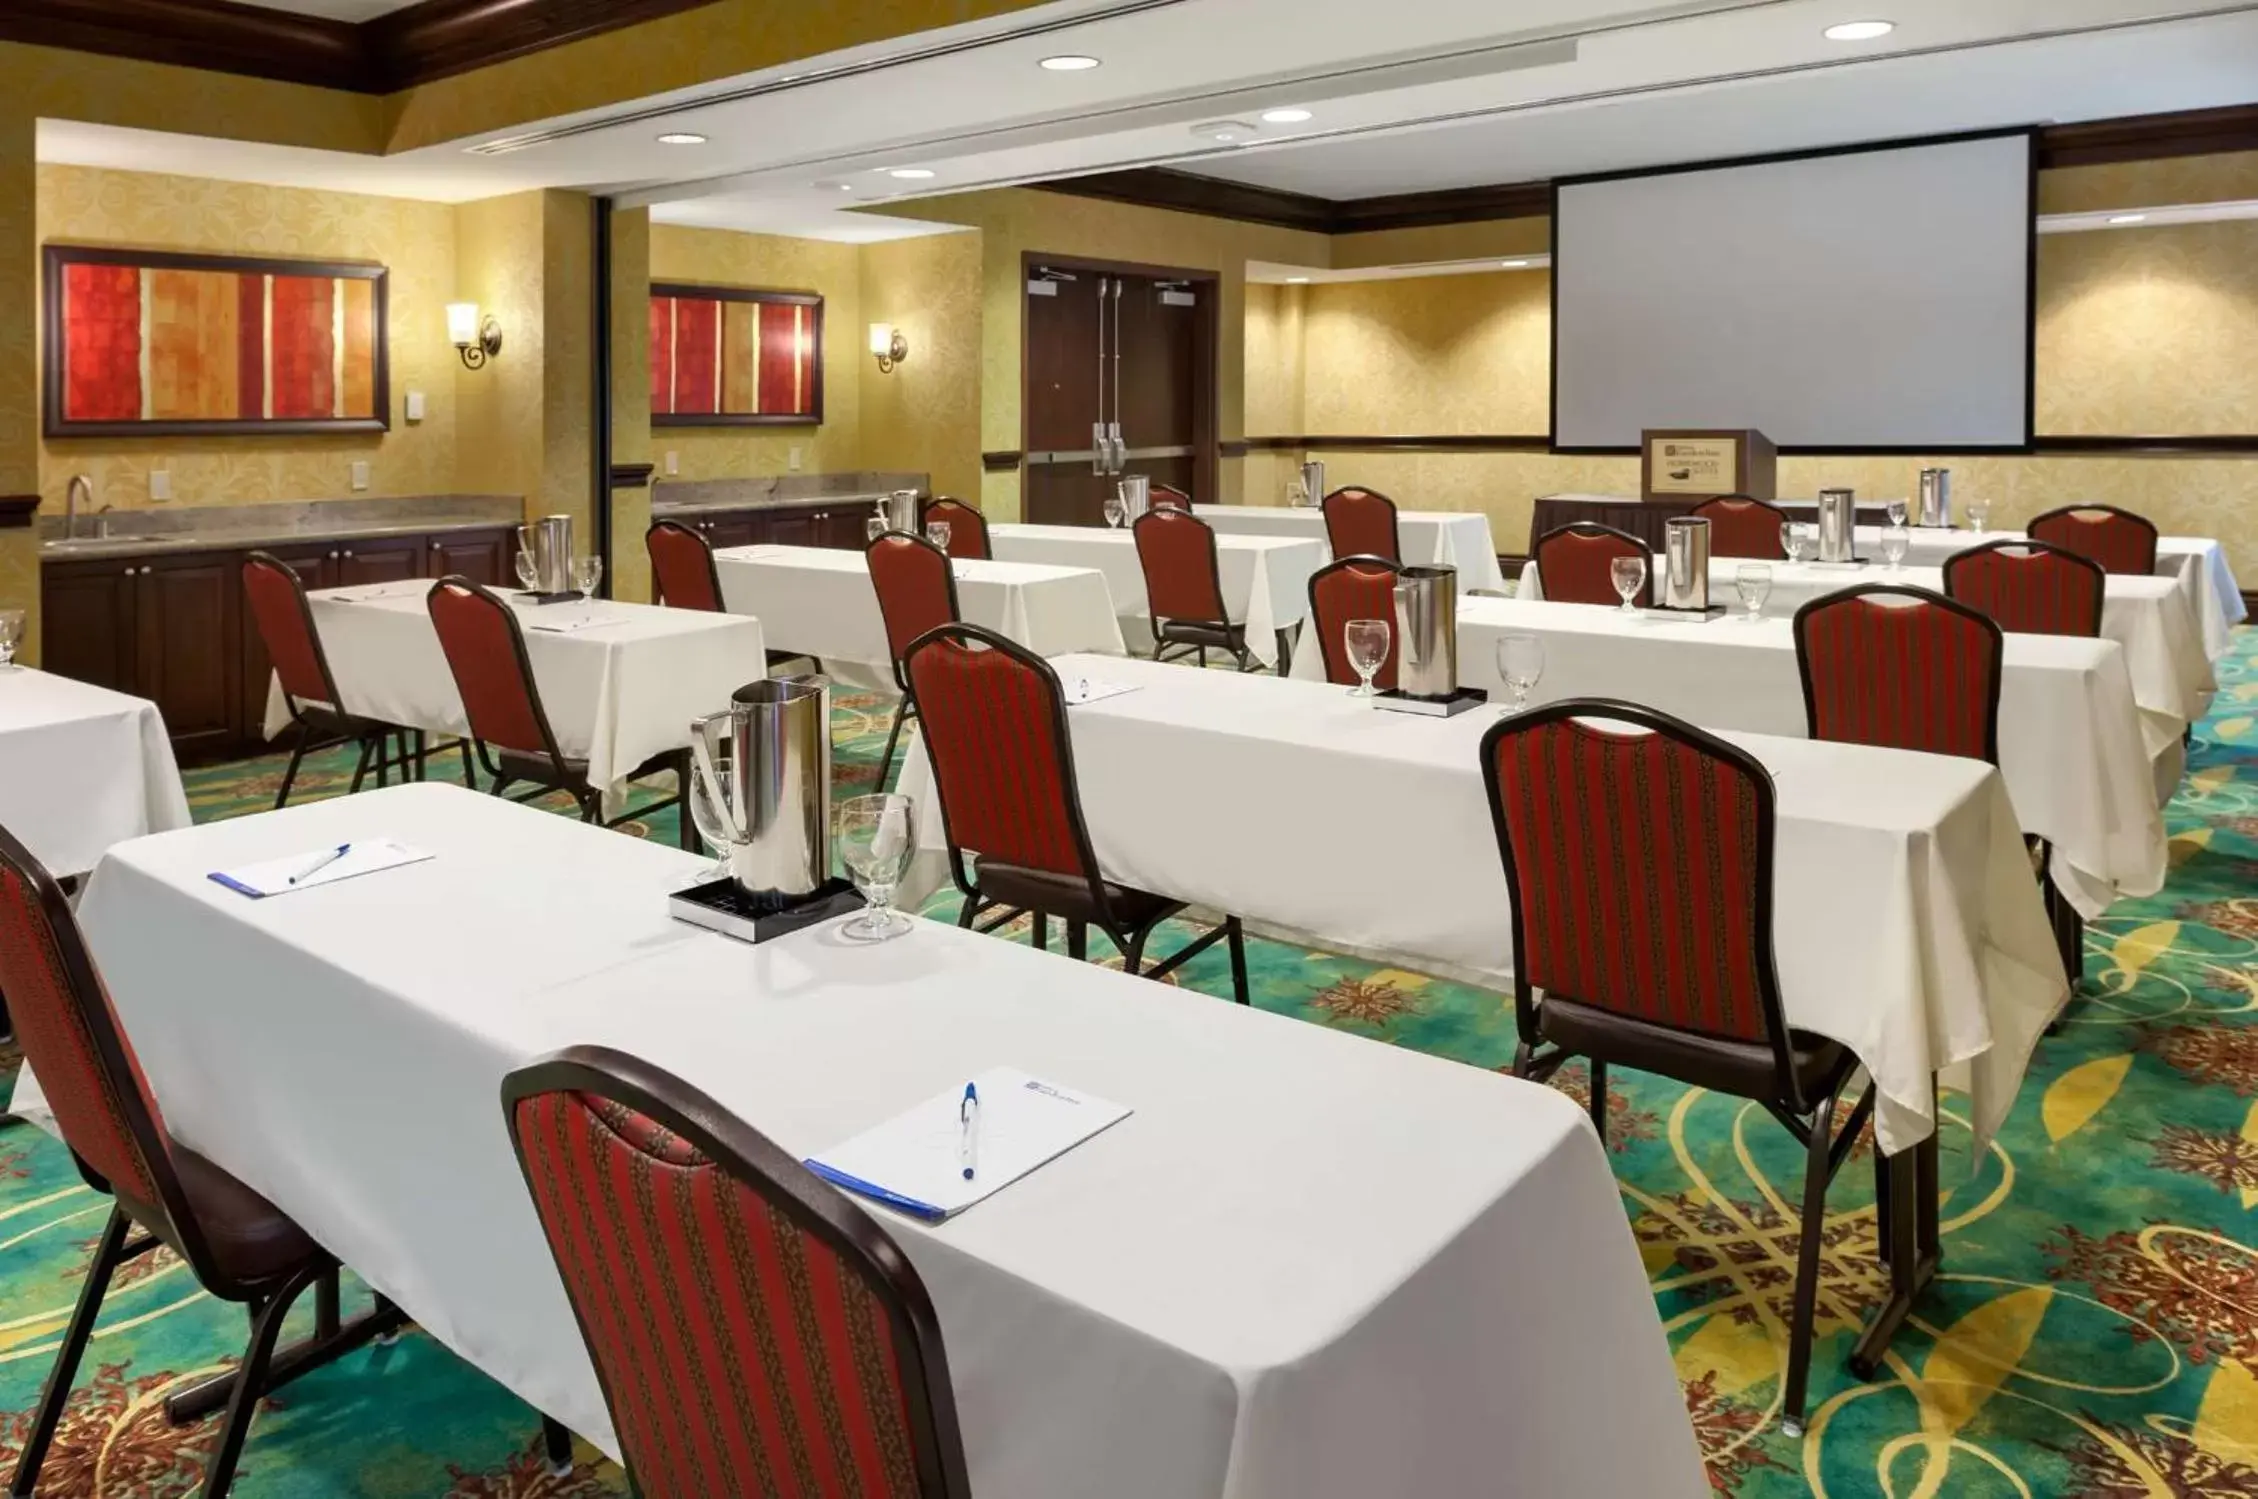 Meeting/conference room in Hilton Garden Inn Shreveport Bossier City